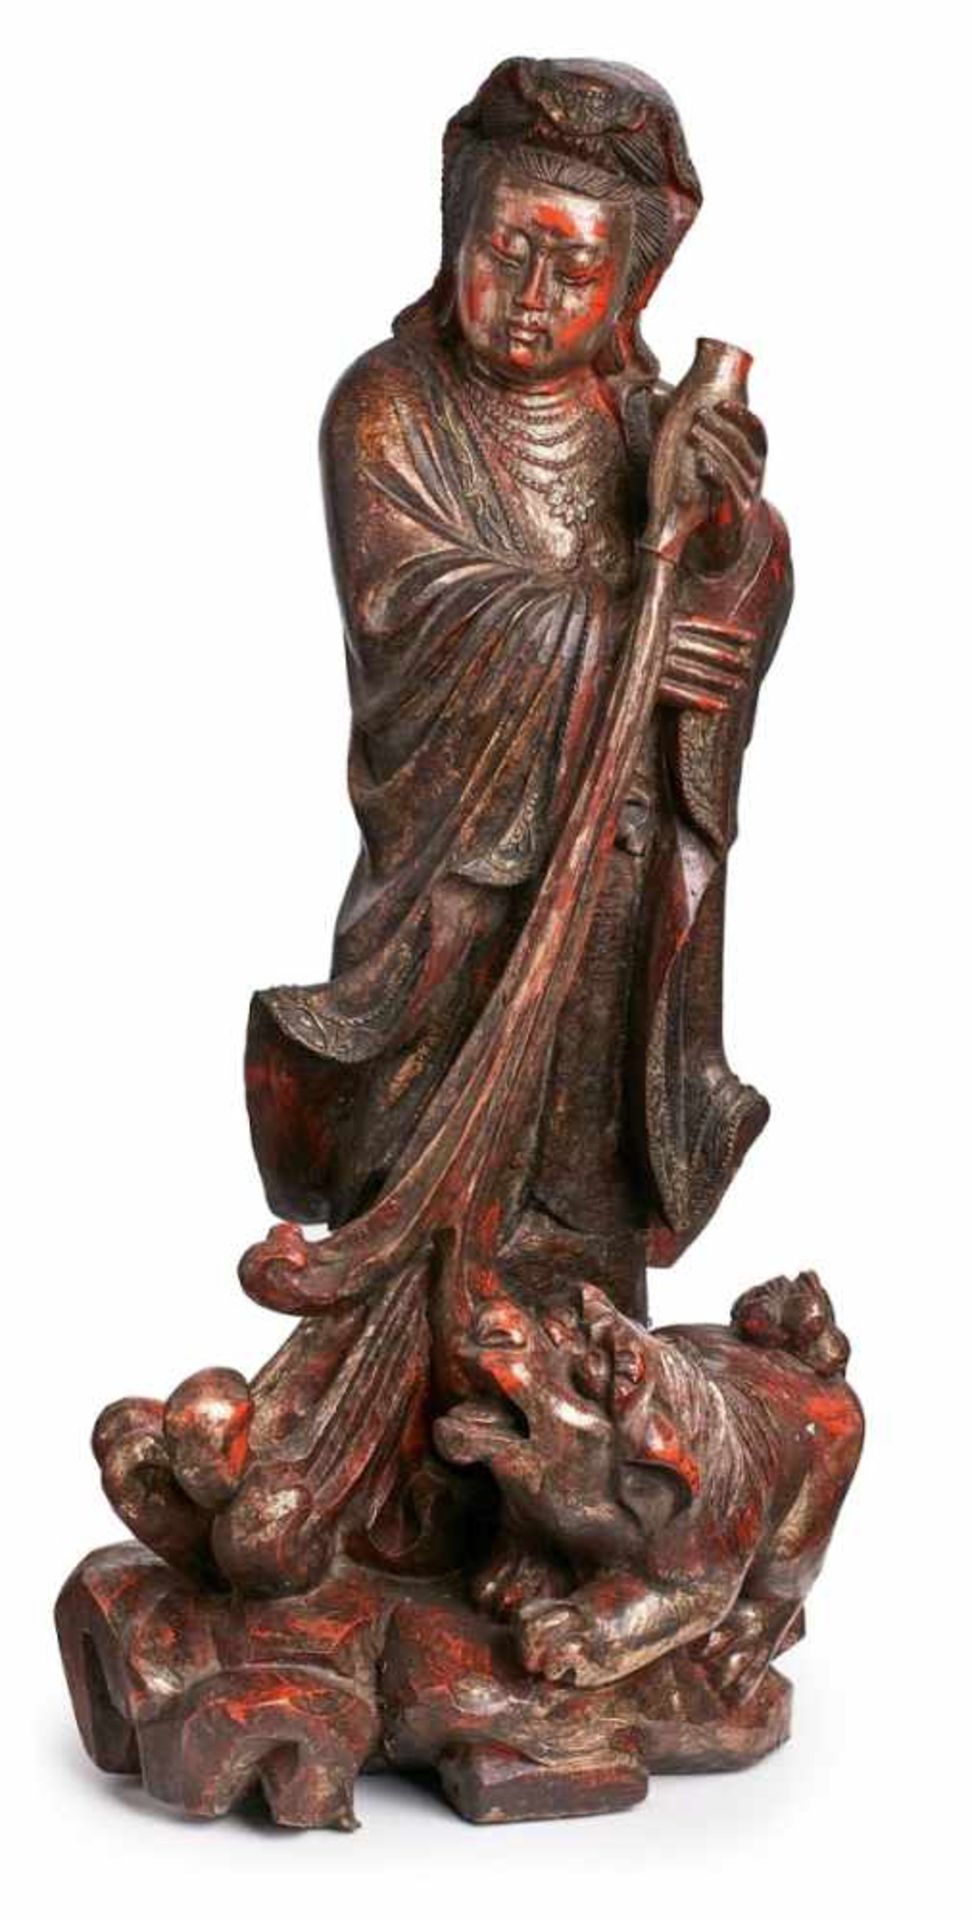 Gr. Skulptur Guanyin, China wohl um 1880. Holz, vollrd. geschnitzt, gold gefasst. Auf Fels